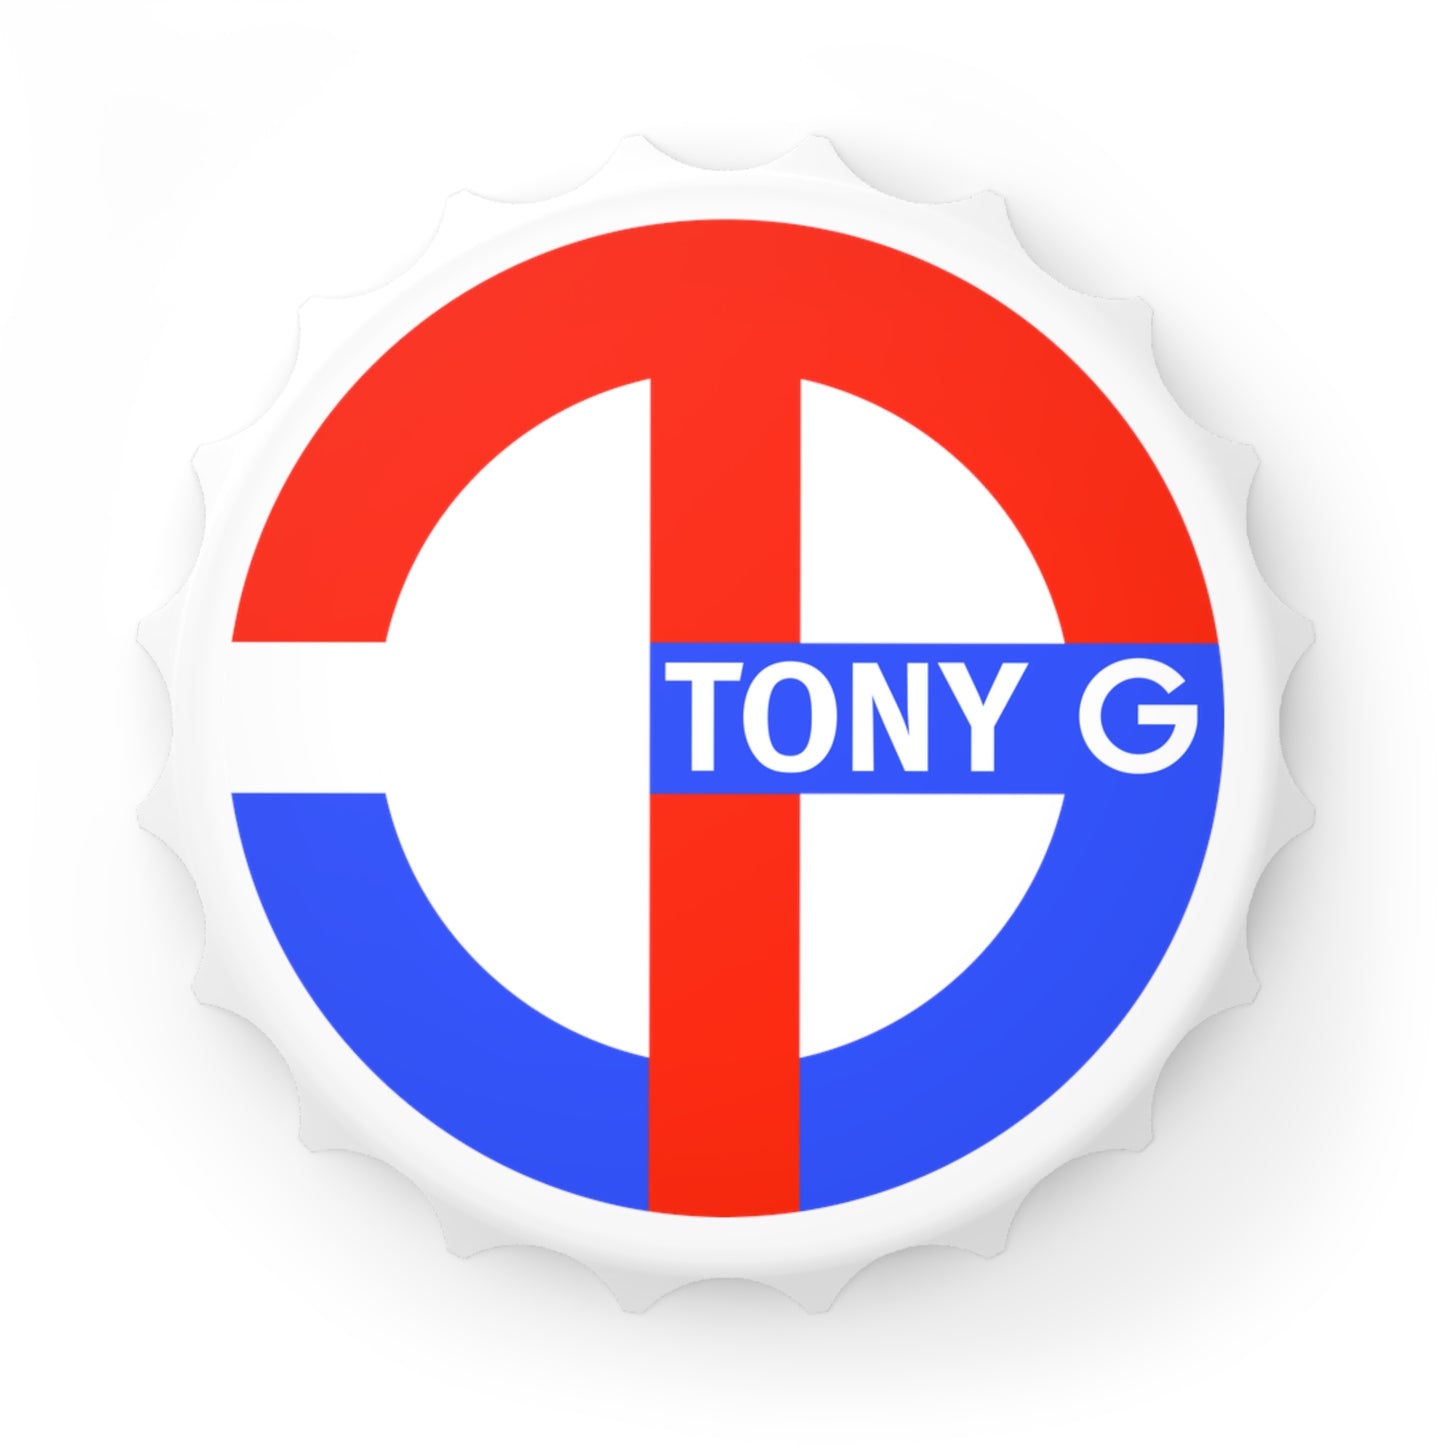 TONY G Bottle Opener, featuring the TG Logo USA Monogram